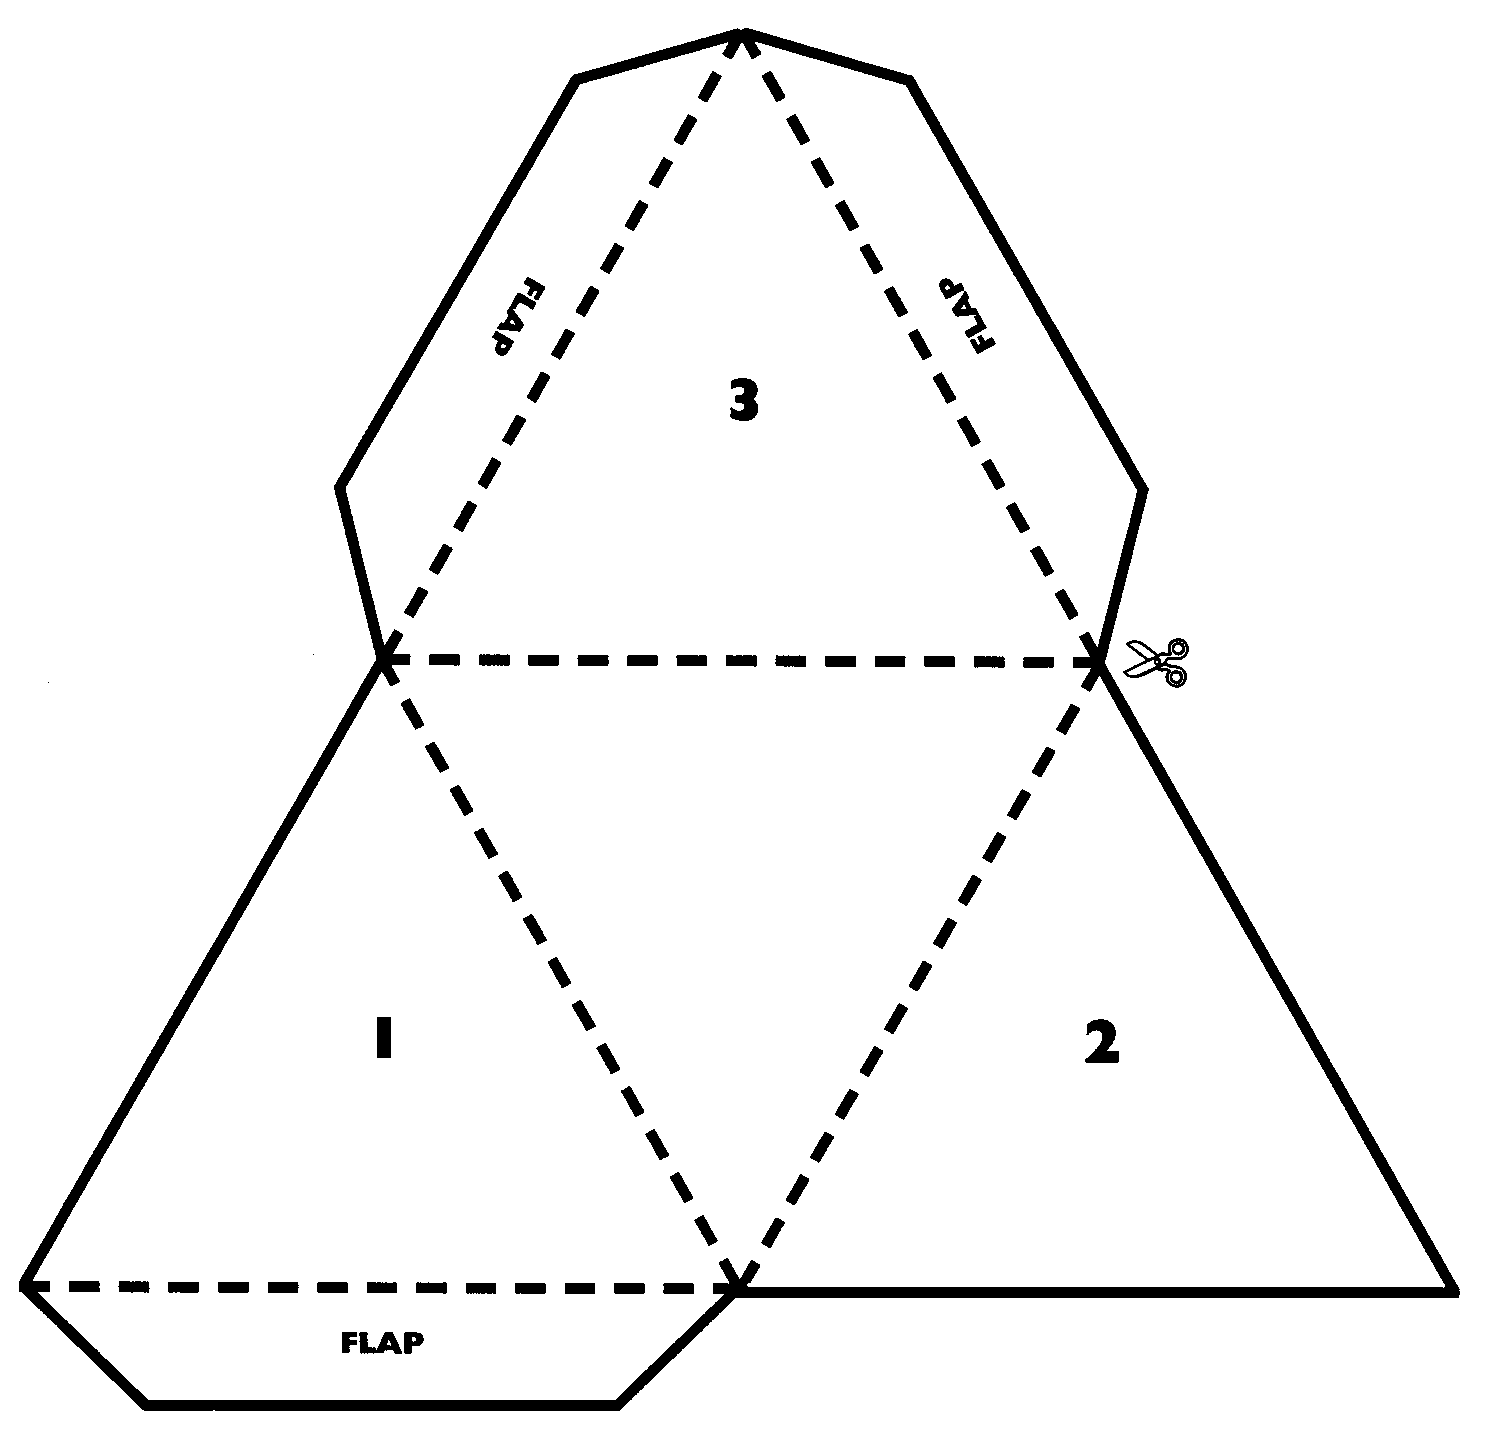 Моделирование объемных фигур – интересное занятие, навыки которого могут пригодиться, например, при оформлении подарка Благодаря схемам с размерами можно сделать пирамиду из бумаги, которая послужит коробочкой для ювелирного украшения или бижутерии